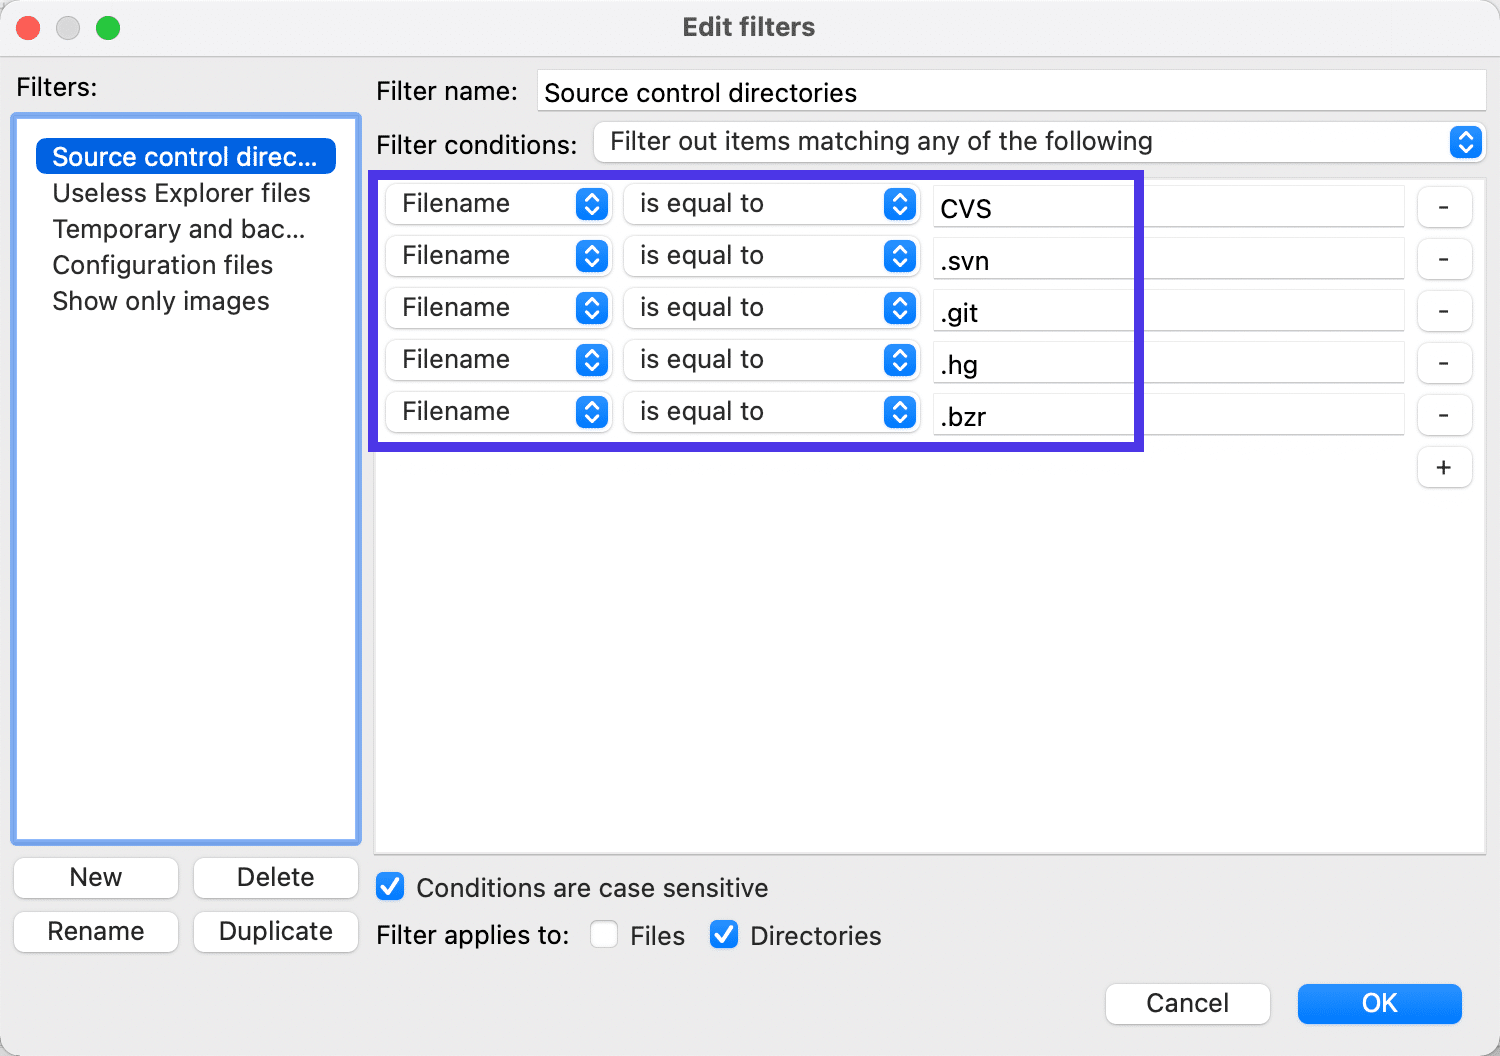 vous pouvez réduire les filtres en n'affichant que des extensions de fichiers spécifiques.